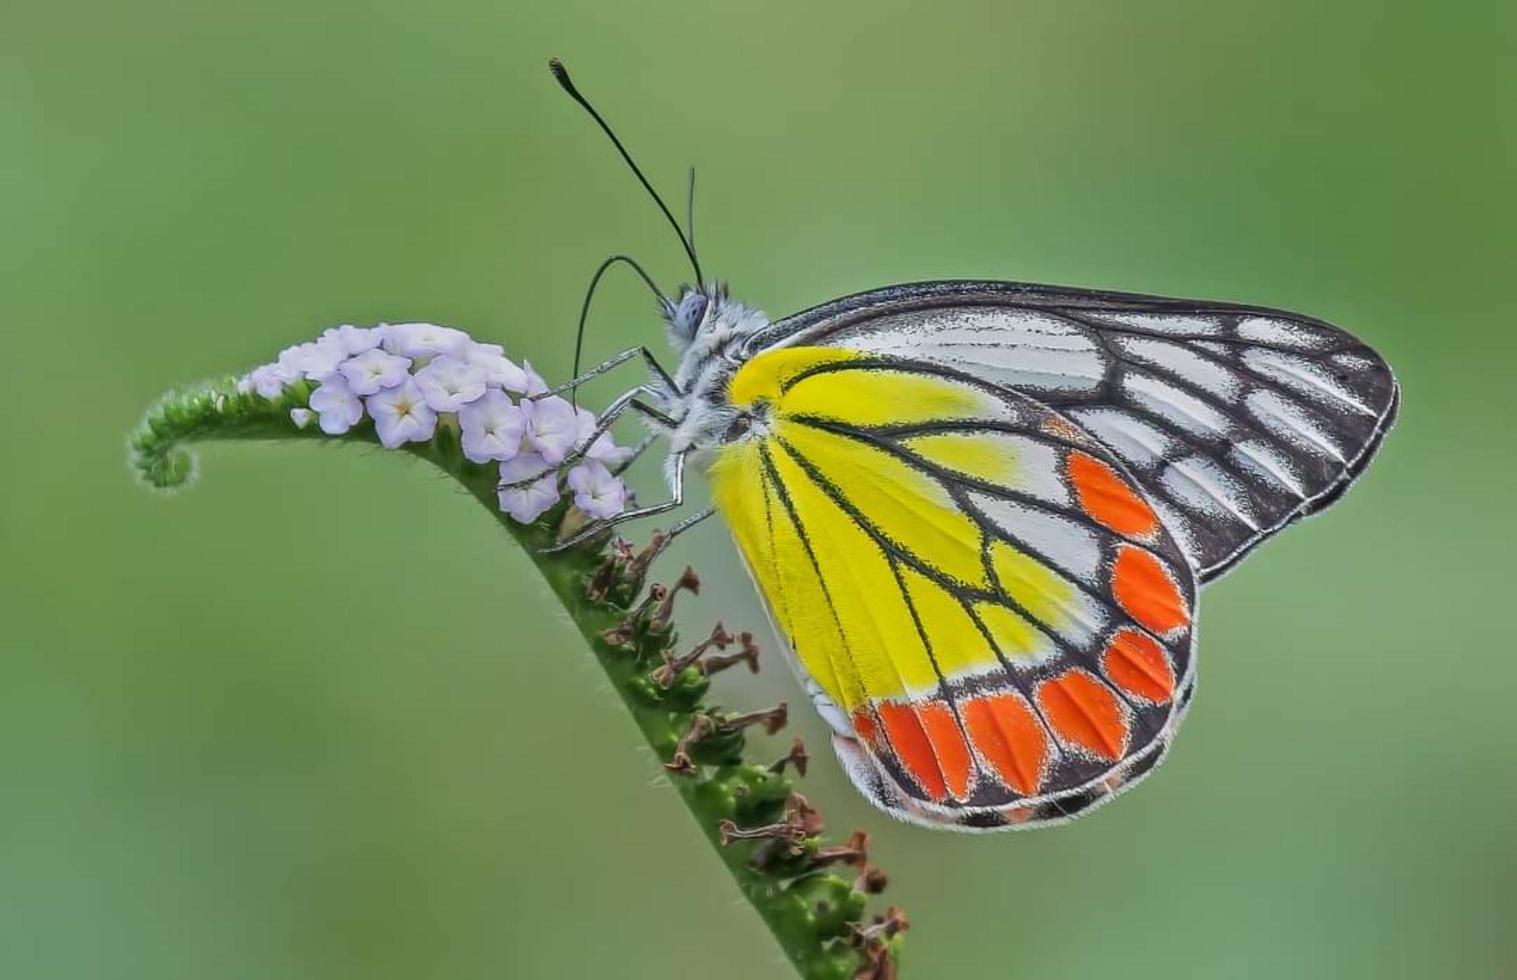 borboleta sentada na flor. foco seletivo. foto de alta qualidade. natureza da primavera.